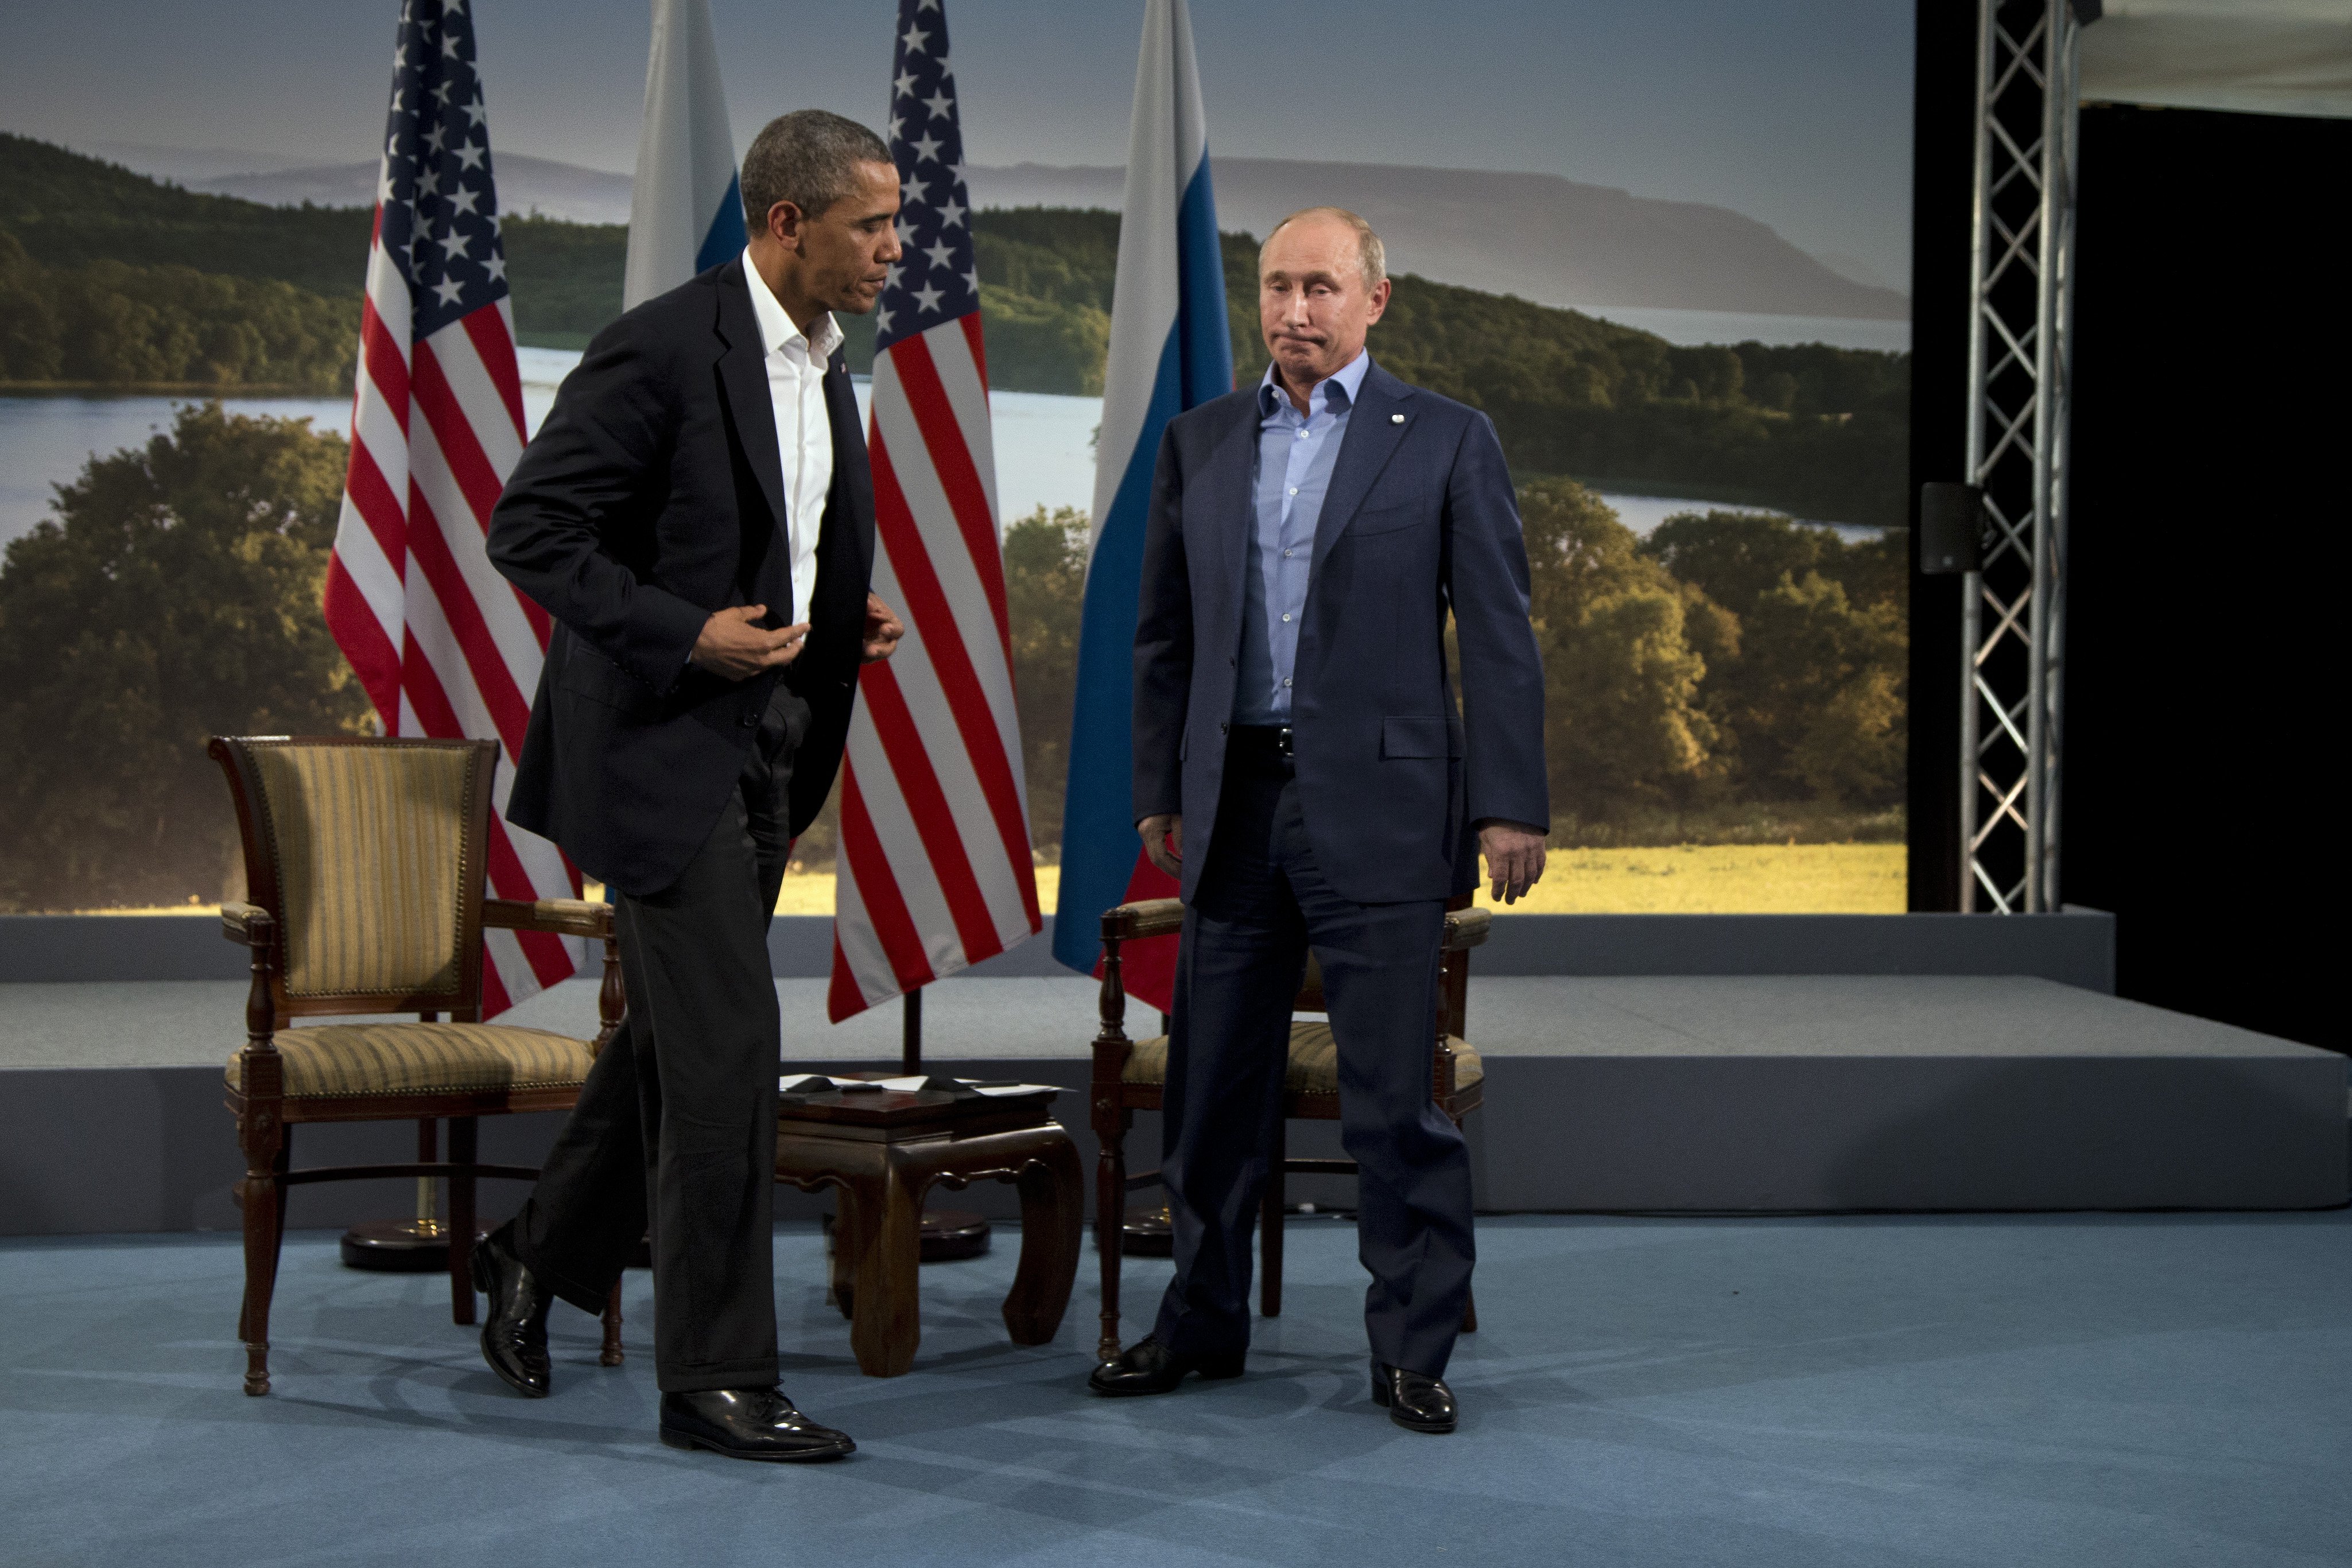  Admite Putin que fue difícil trabajar con Obama; espera normalizar relaciones al arribo de Trump